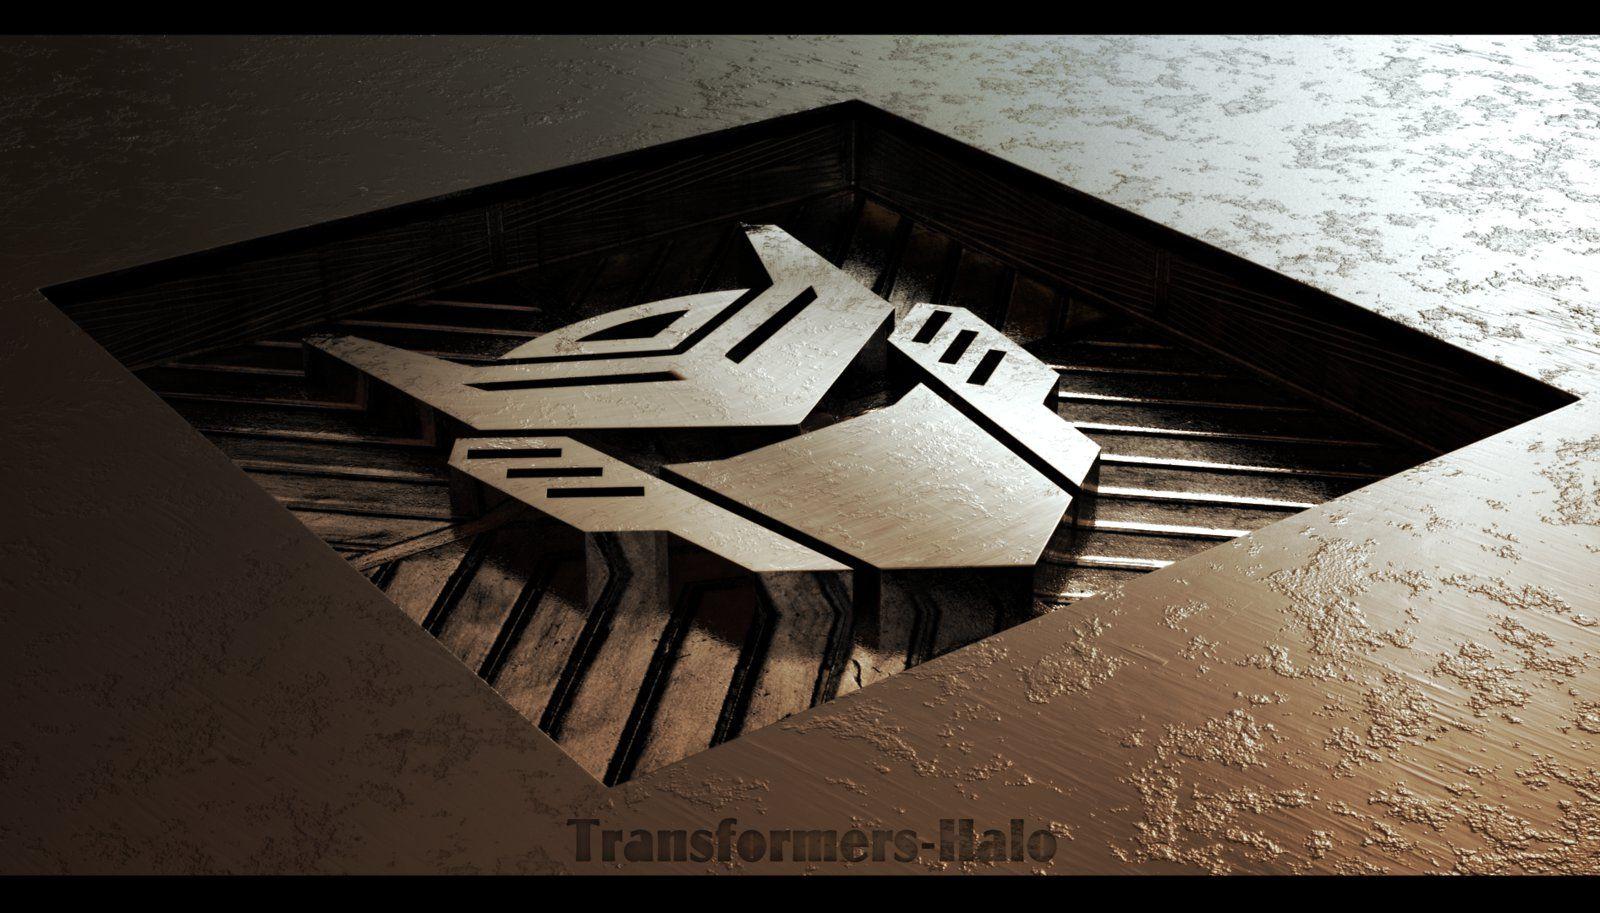 Autobot 3D Wallpaper By DjReko By Transformers Halo